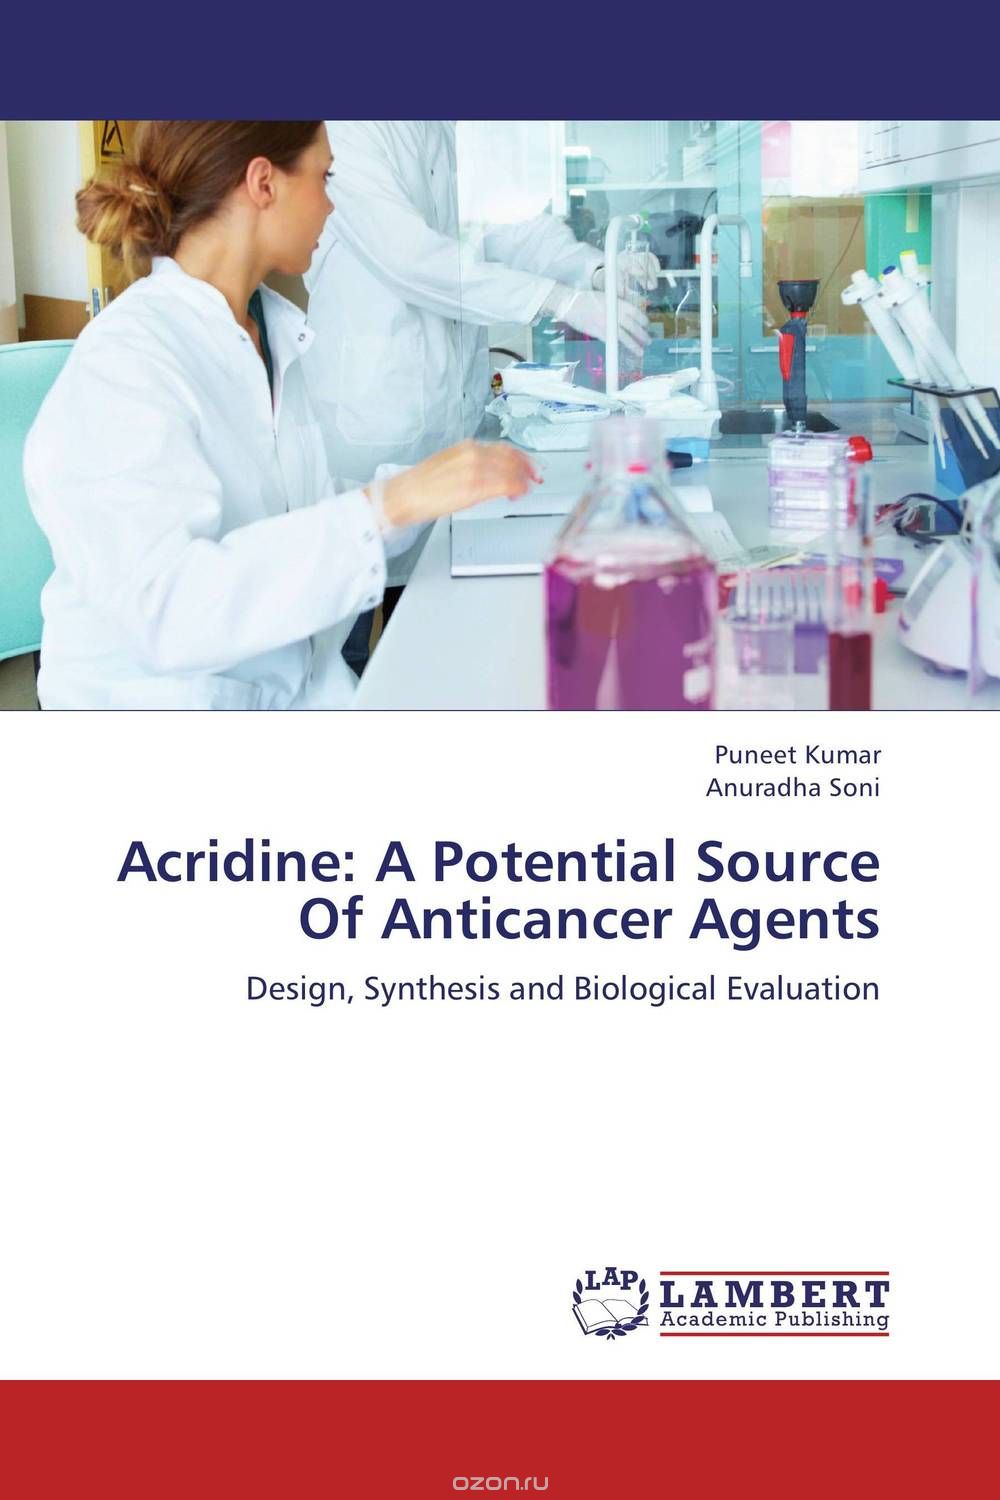 Скачать книгу "Acridine: A Potential Source Of Anticancer Agents"